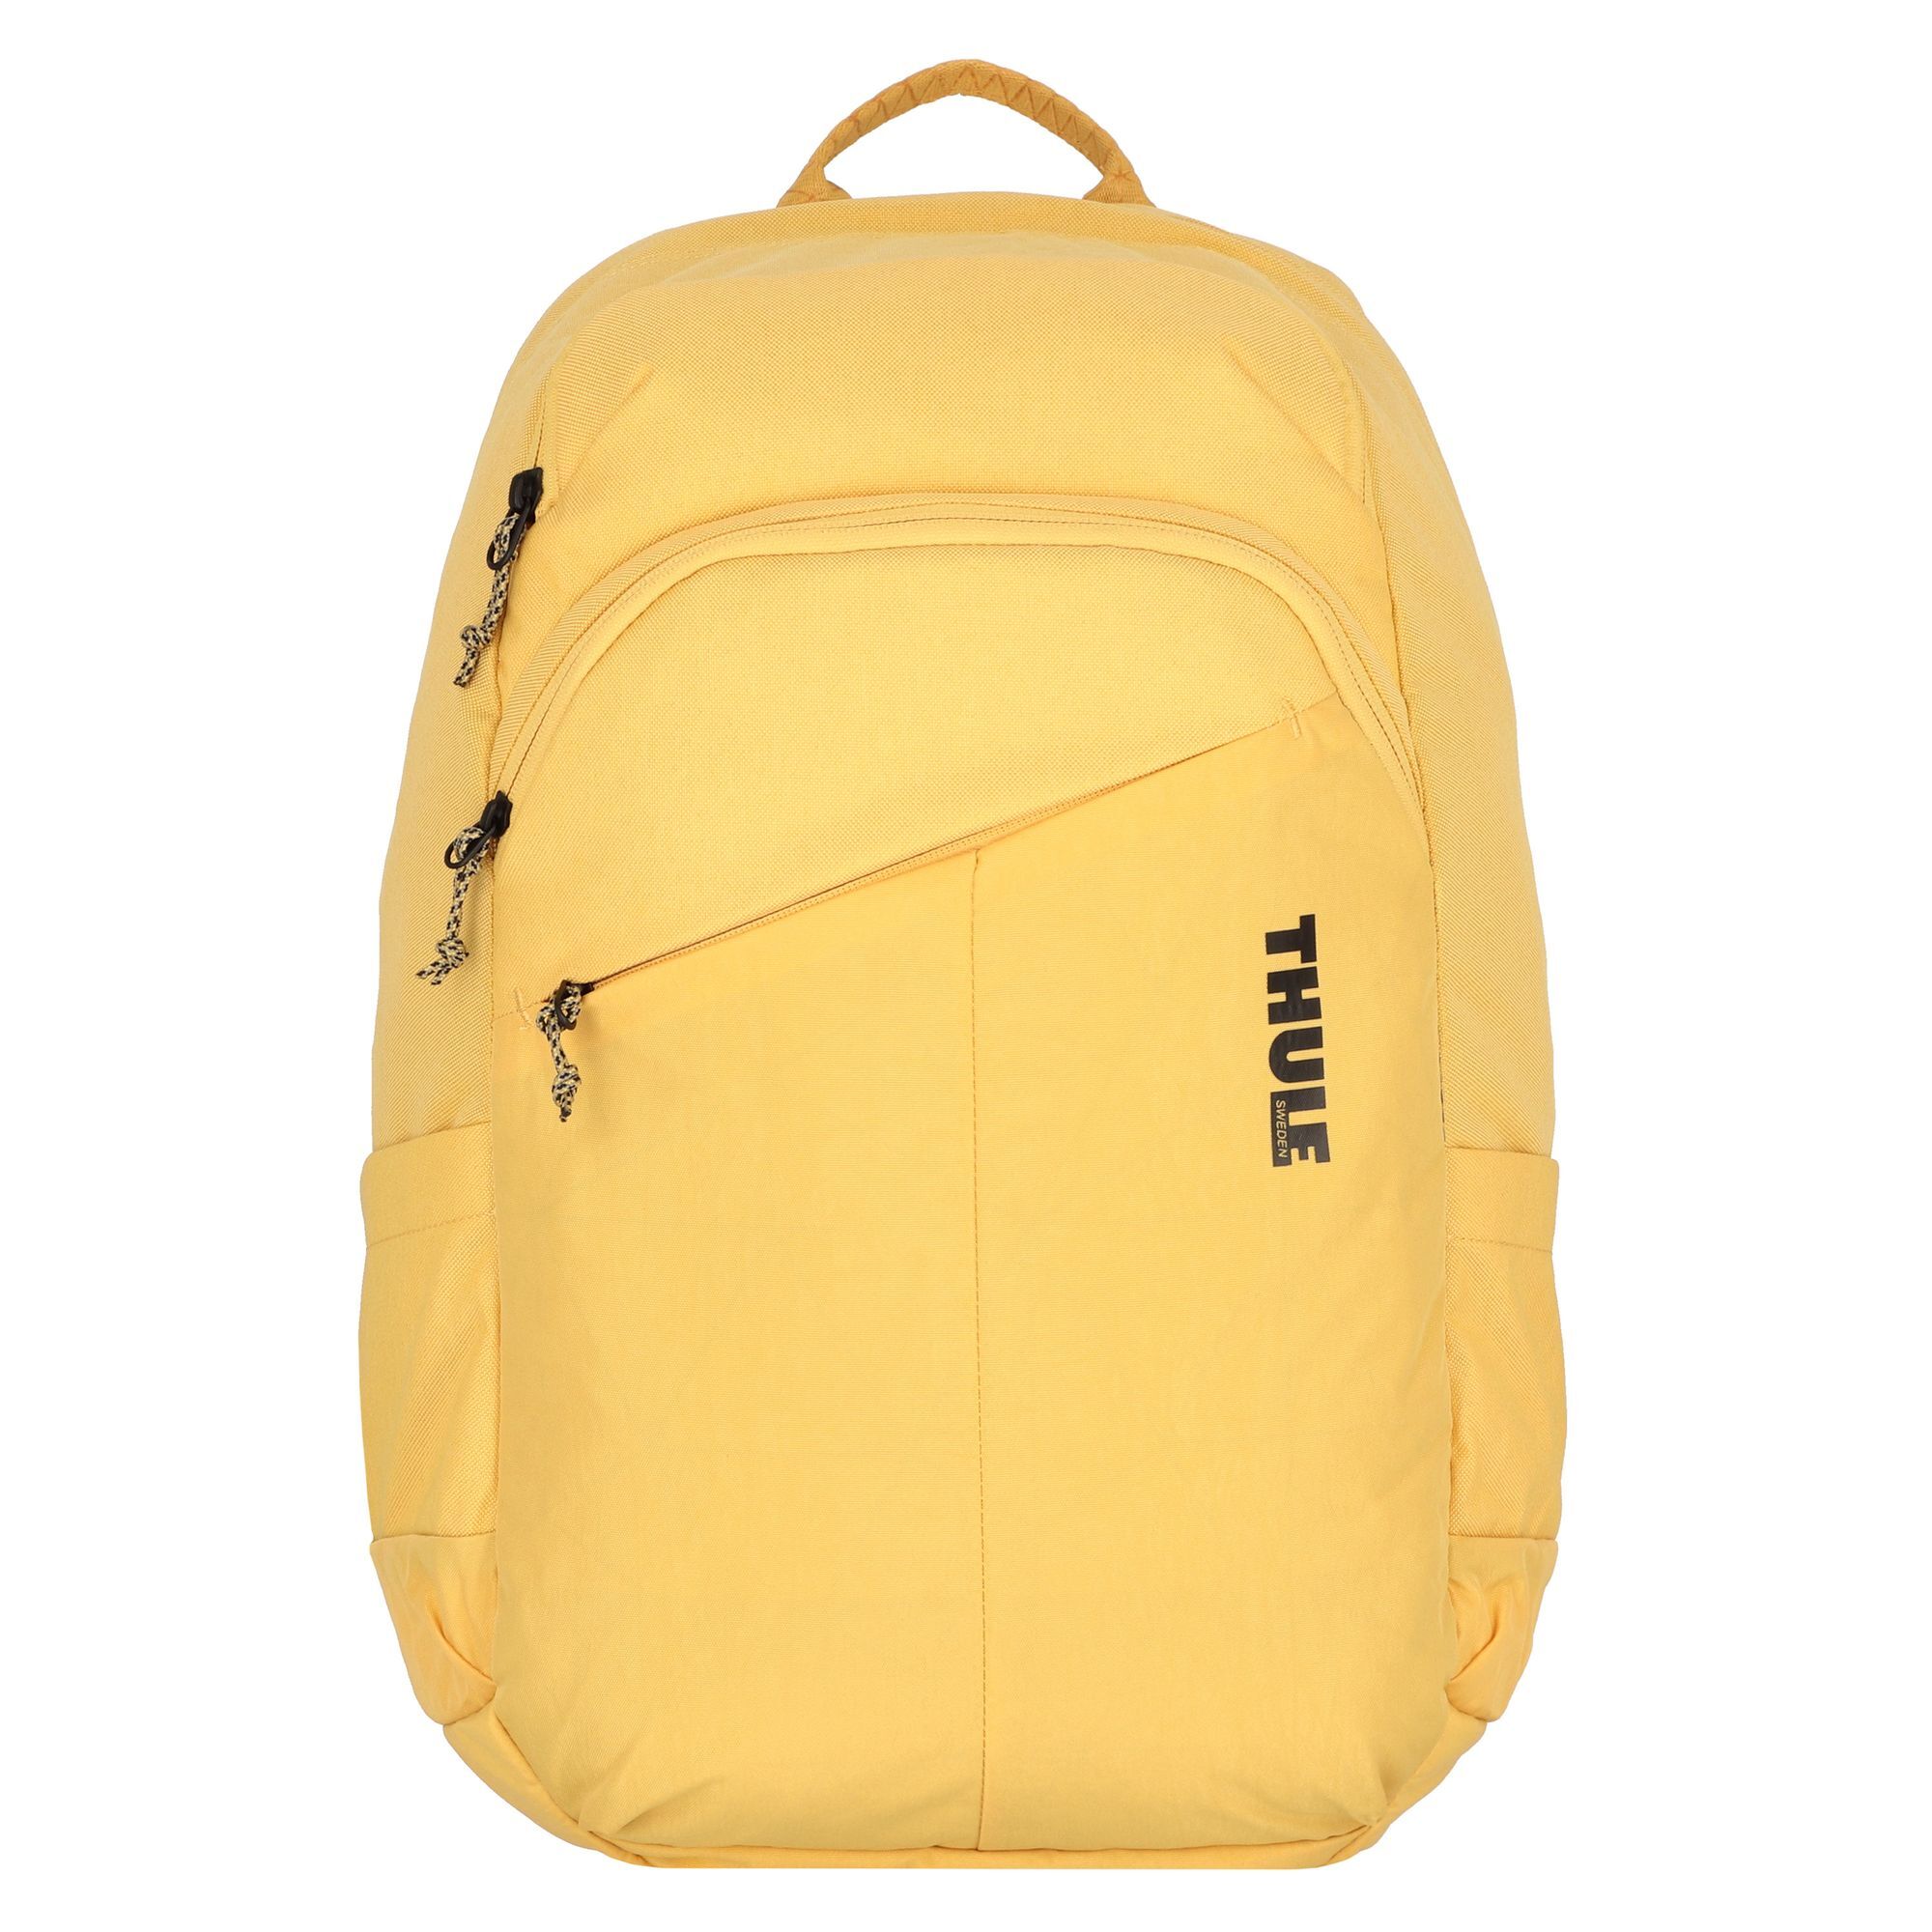 Рюкзак Thule Exeo 46 cm Laptopfach, цвет ochre рюкзак wenger crango 46 cm laptopfach цвет gravity black